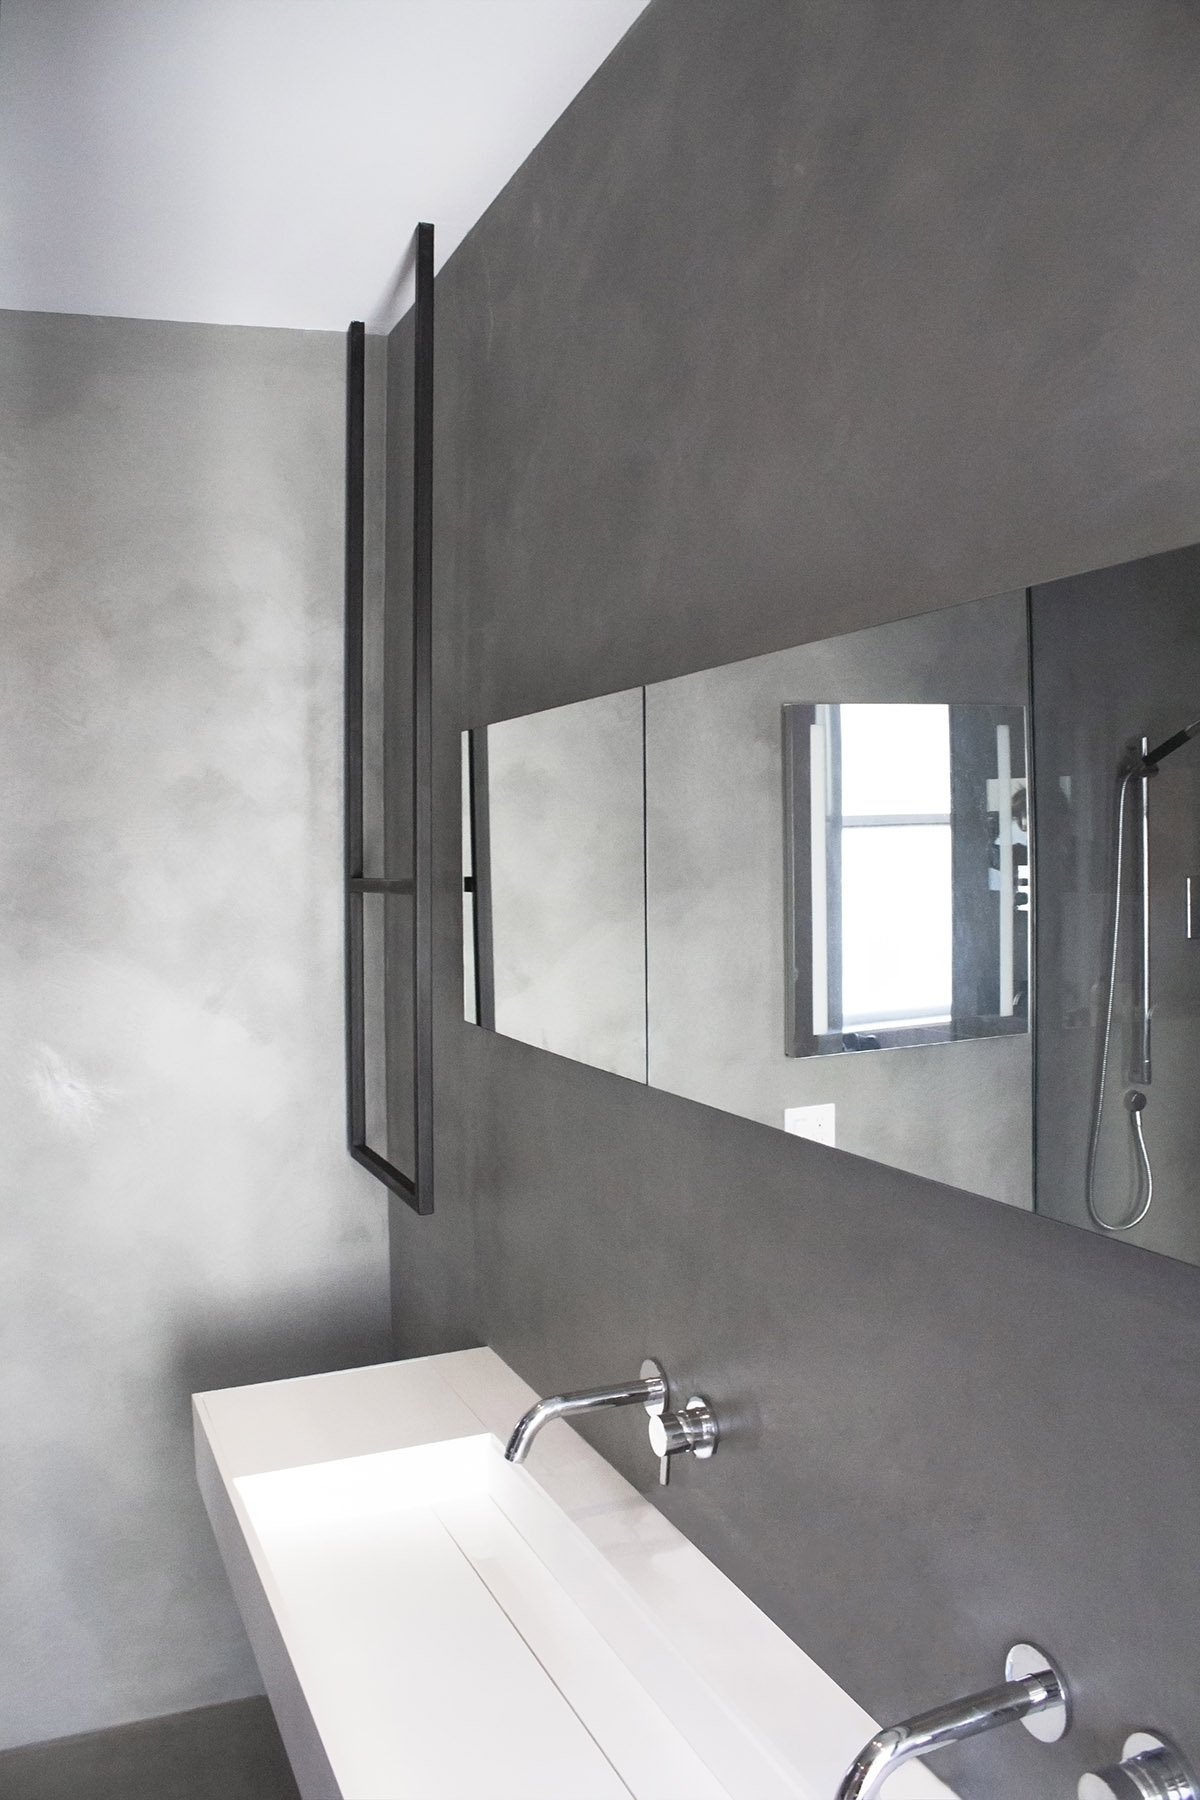 Monolithic Concrete Bathroom Design